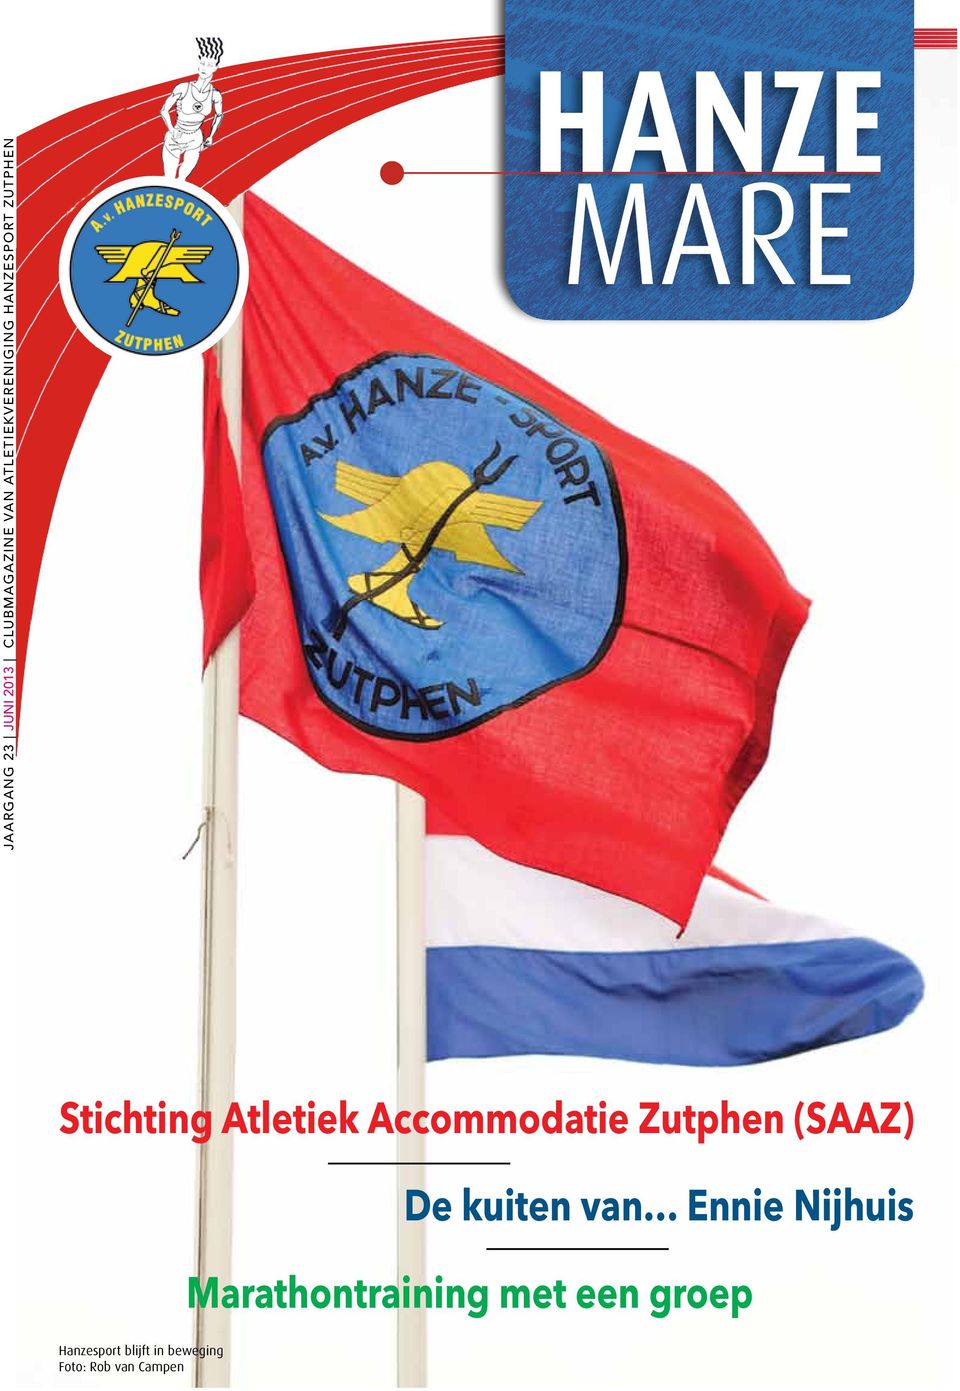 Accommodatie Zutphen (SAAZ) De kuiten van Ennie Nijhuis